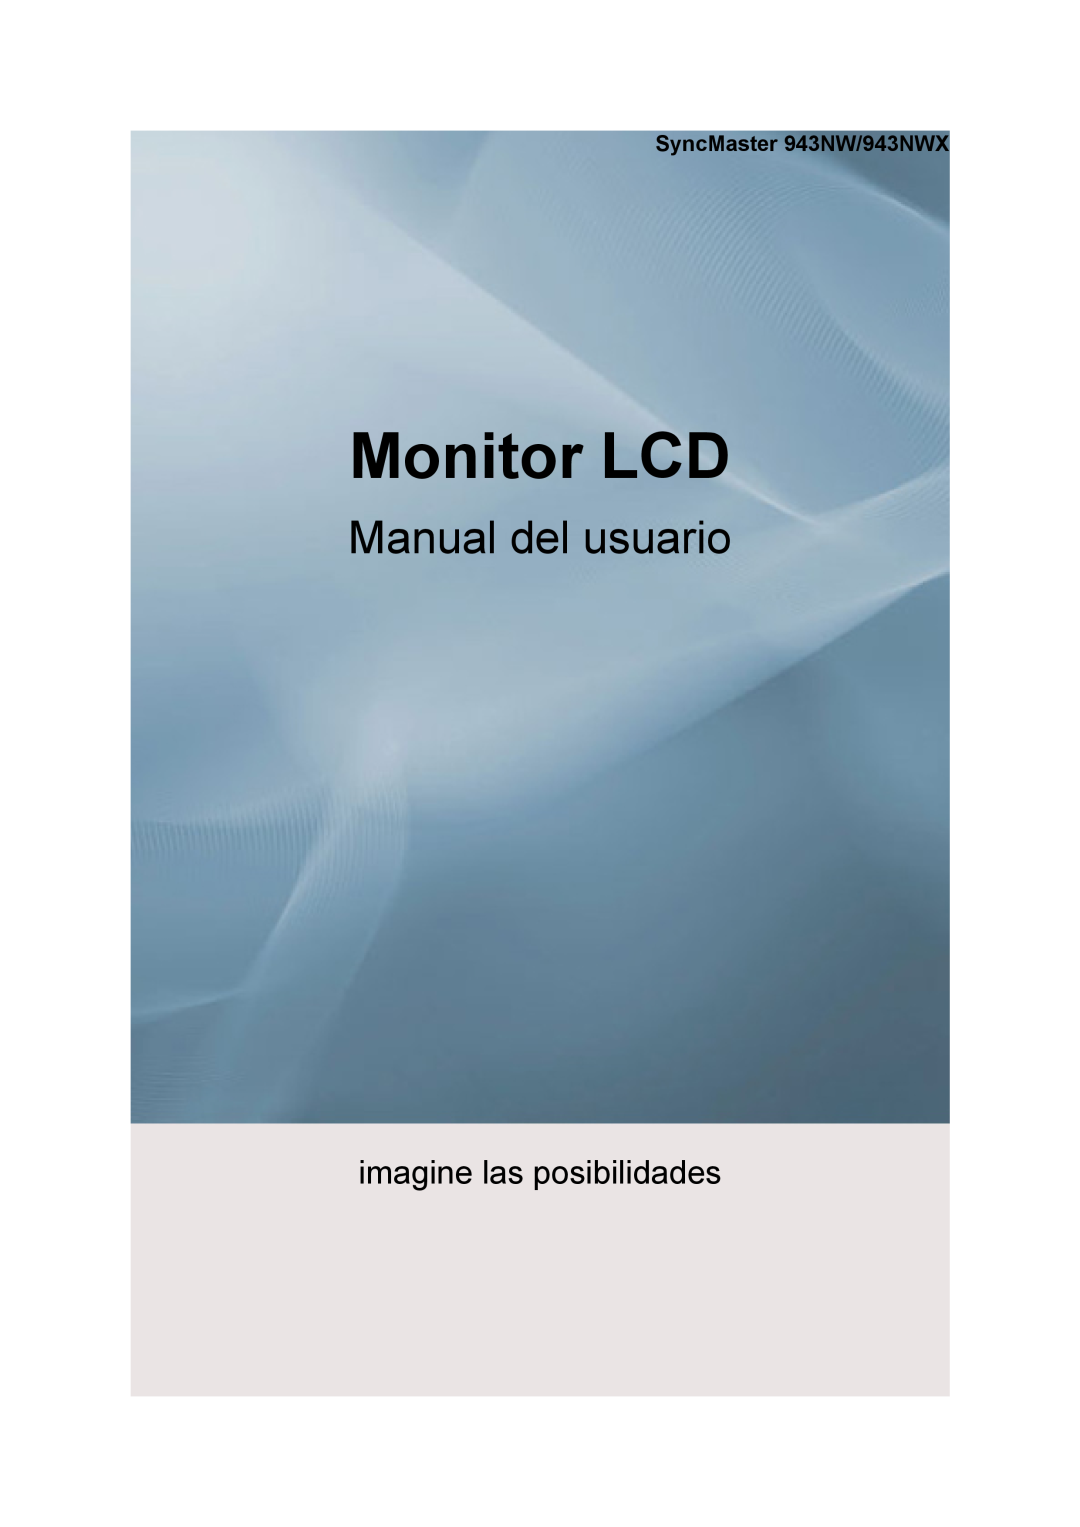 Samsung LS19MYNKS/EDC manual SyncMaster 943NW/943NWX, LCD monitor, Felhasználói kézikönyv, Képzelje el a lehetőségeket 